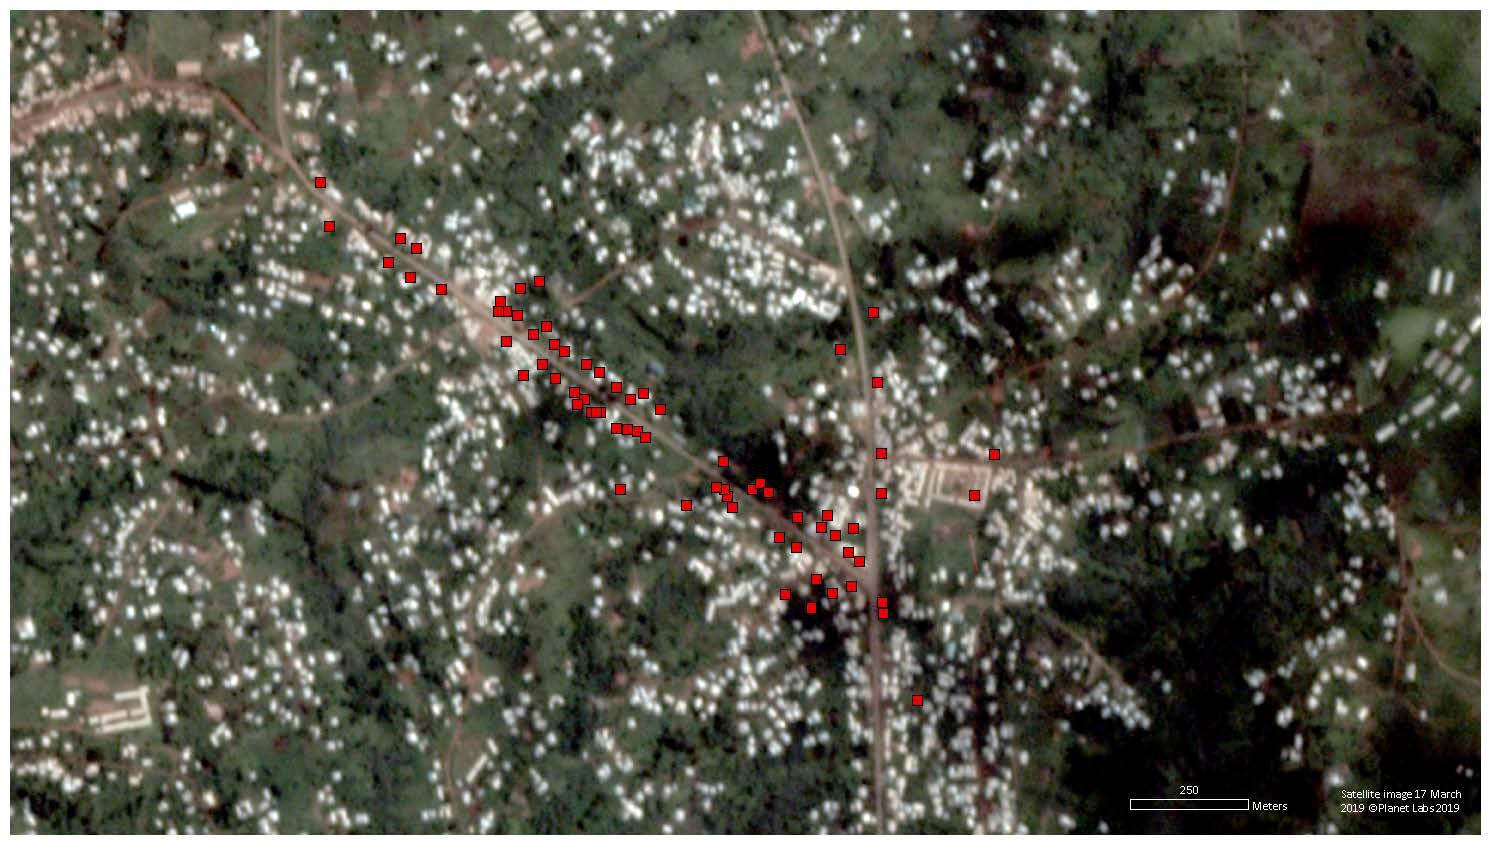 Image satellite montrant plus de 70 bÃ¢timents touchÃ©s par des incendies Ã  Mankon, Cameroun, entre le 13 et le 17 mai 2019. Les dommages signalÃ©s sont peut-Ãªtre sous-estimÃ©s, en raison de la faible rÃ©solution de lâimage.